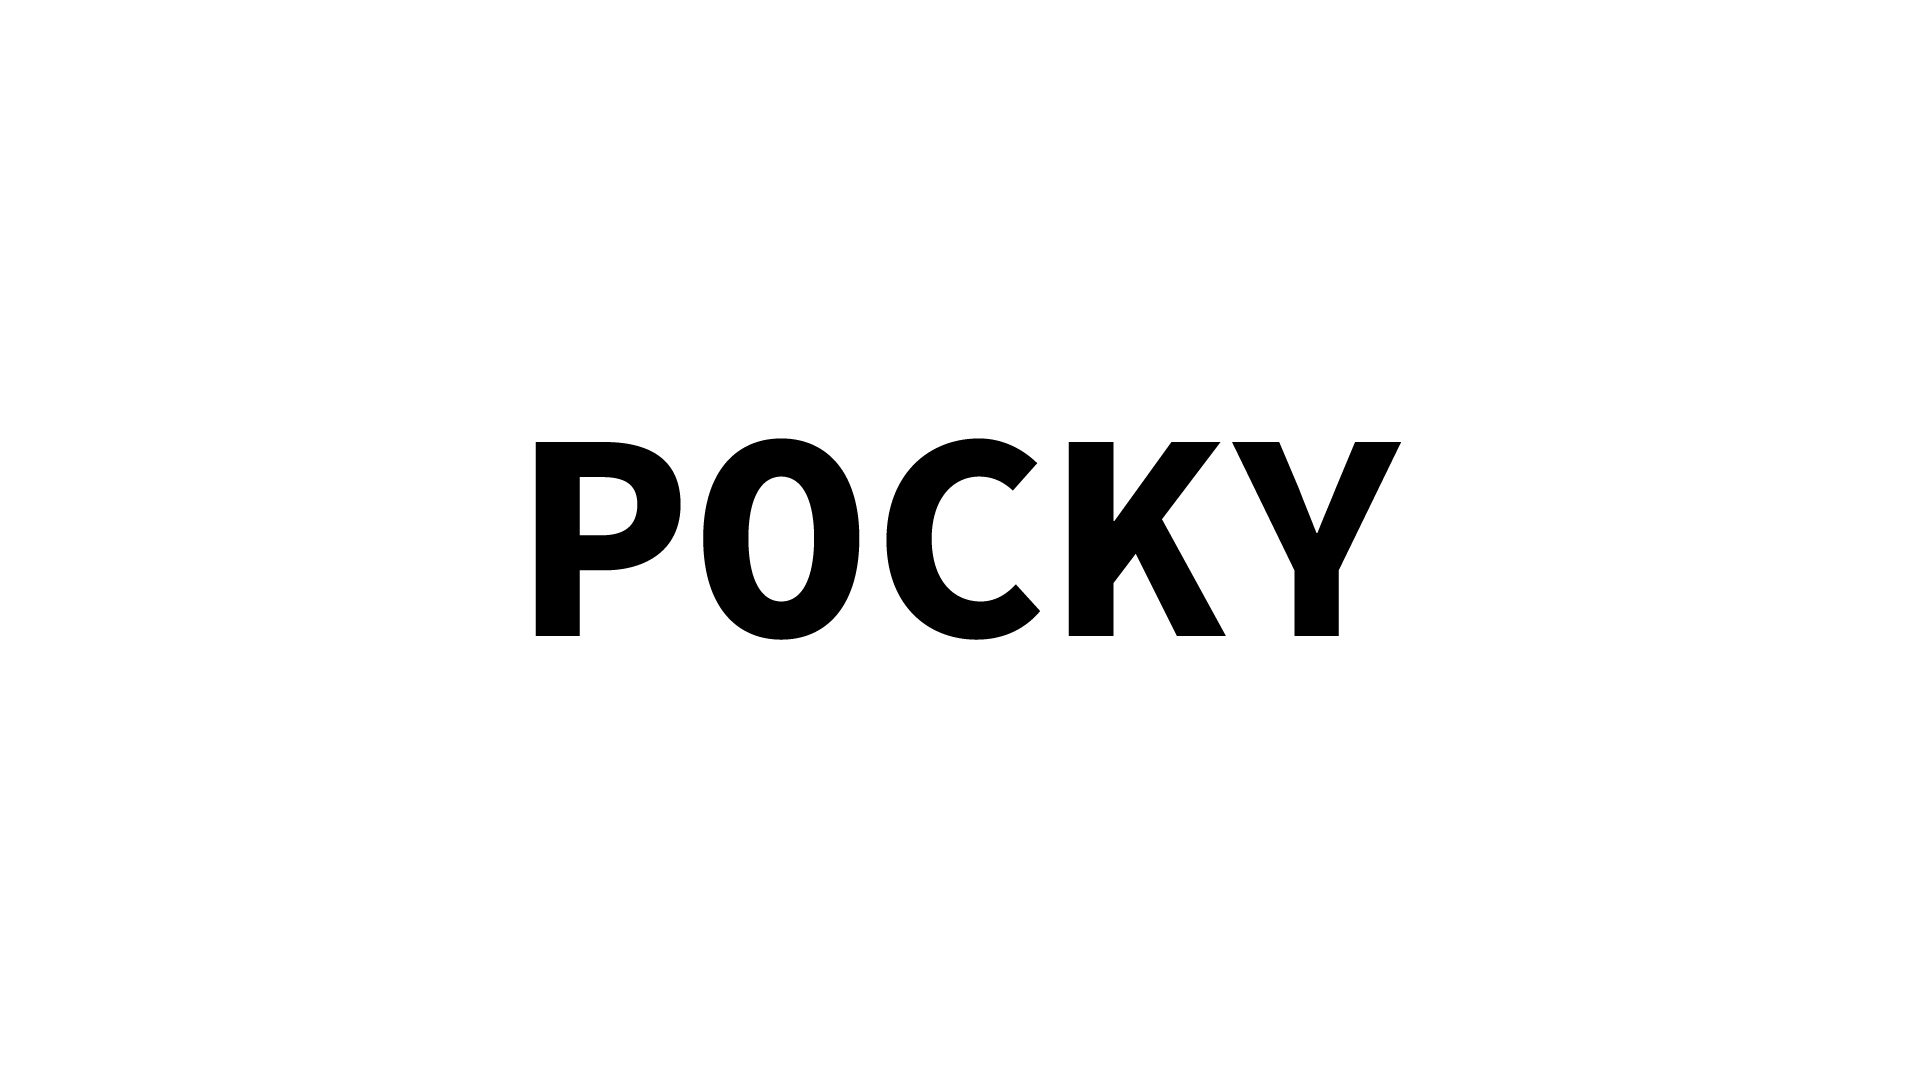 ポッキー 動画製作者のためのフリーフォント集 ゲーム実況フォント